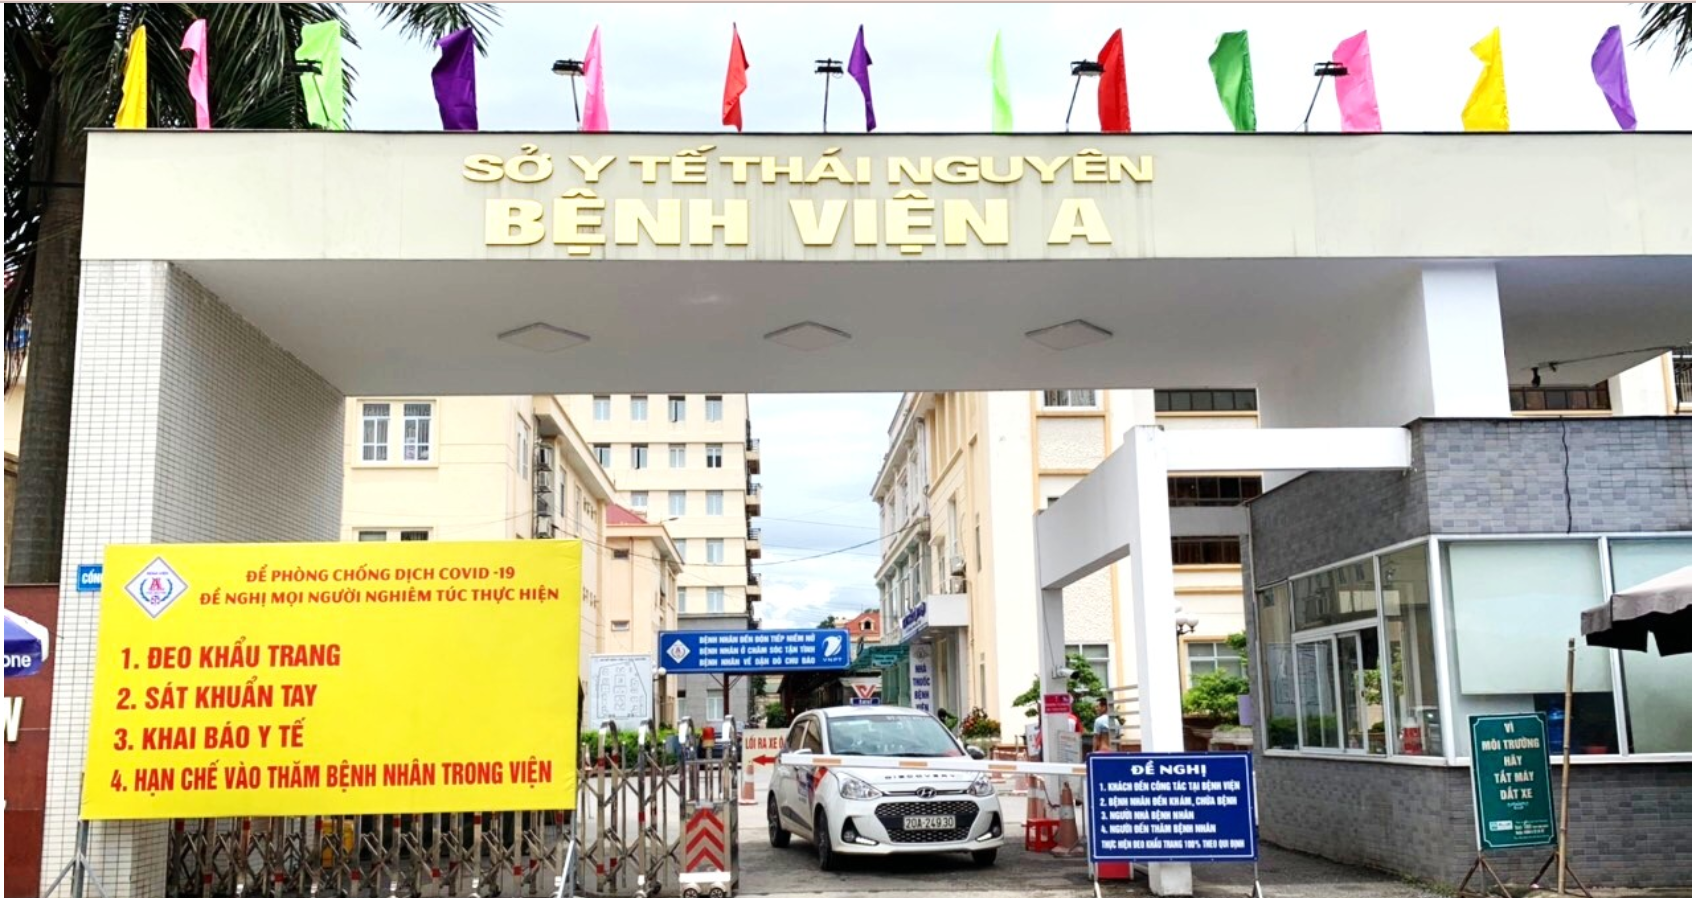 Banner Bệnh Viện A Thái Nguyên